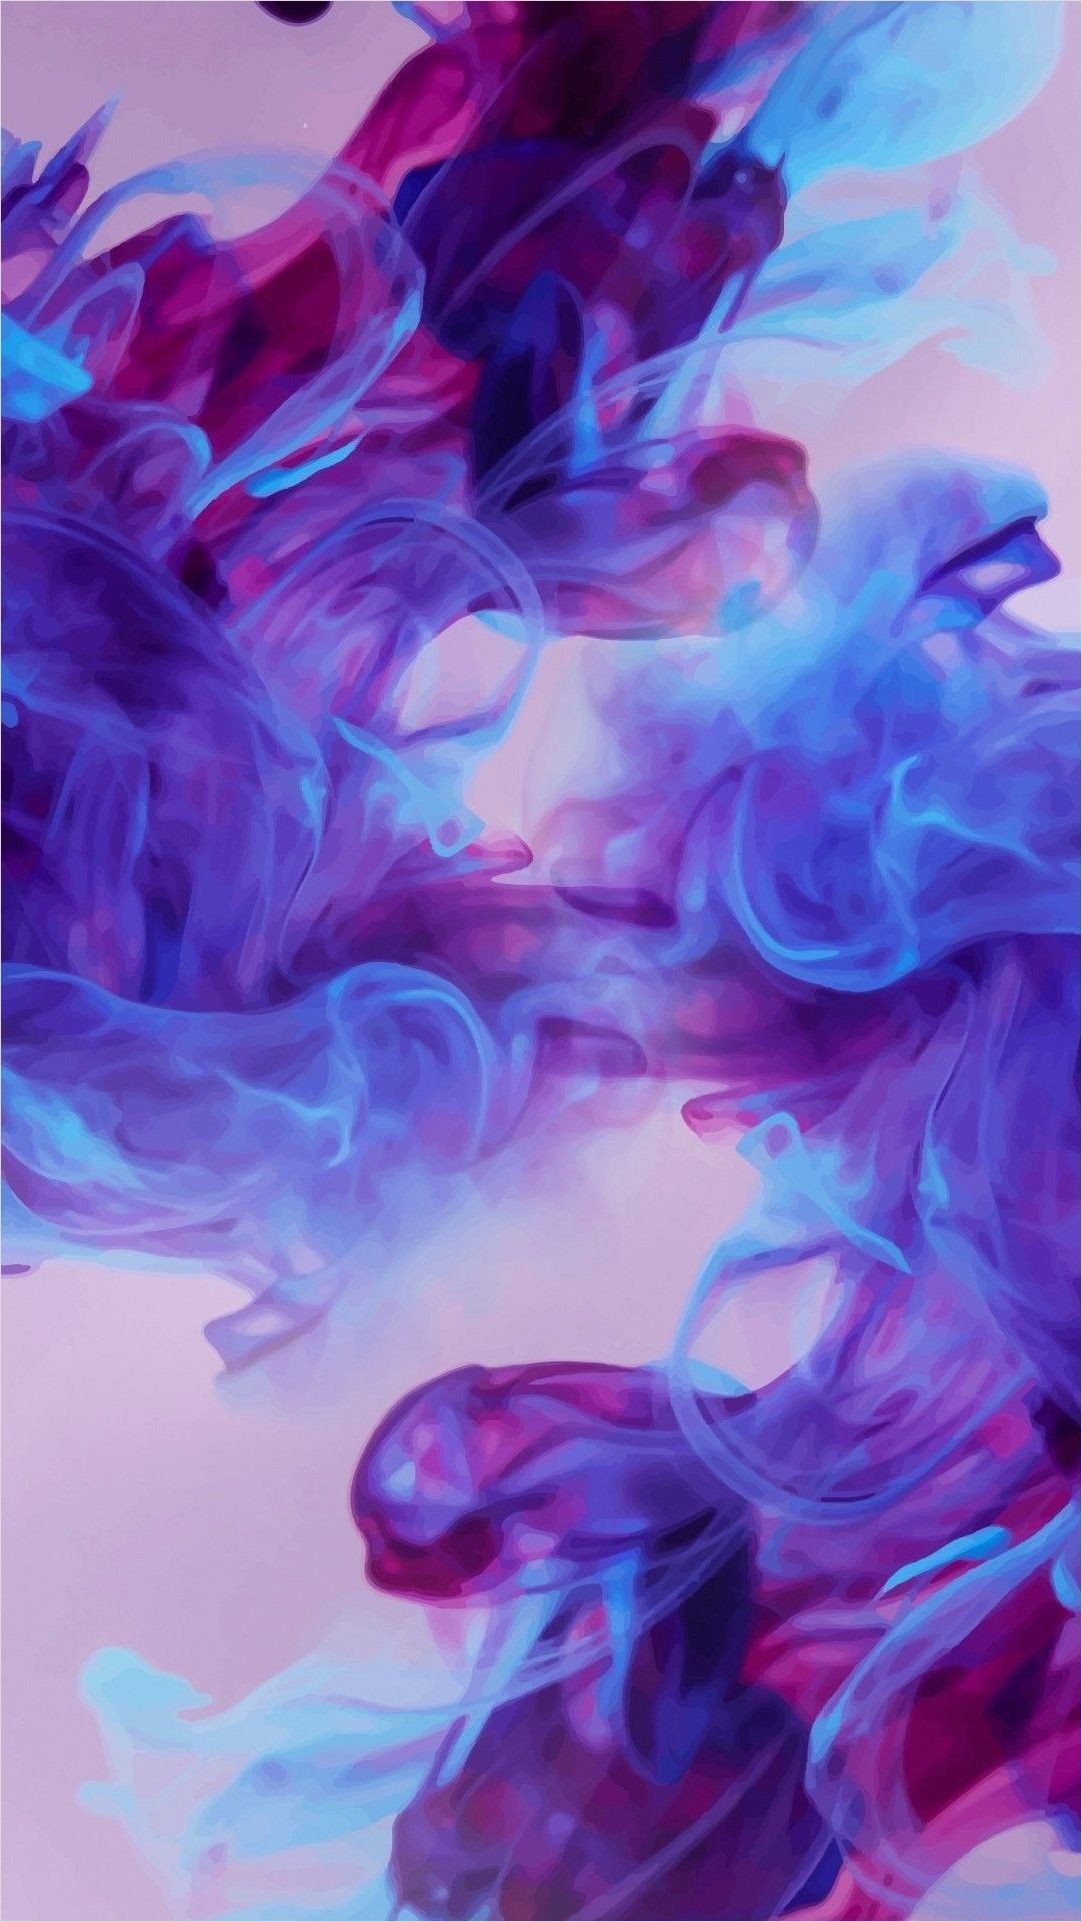 4k Blue Purple Aesthetic Wallpaper. Galaxy wallpaper, iPhone wallpaper smoke, Phone wallpaper